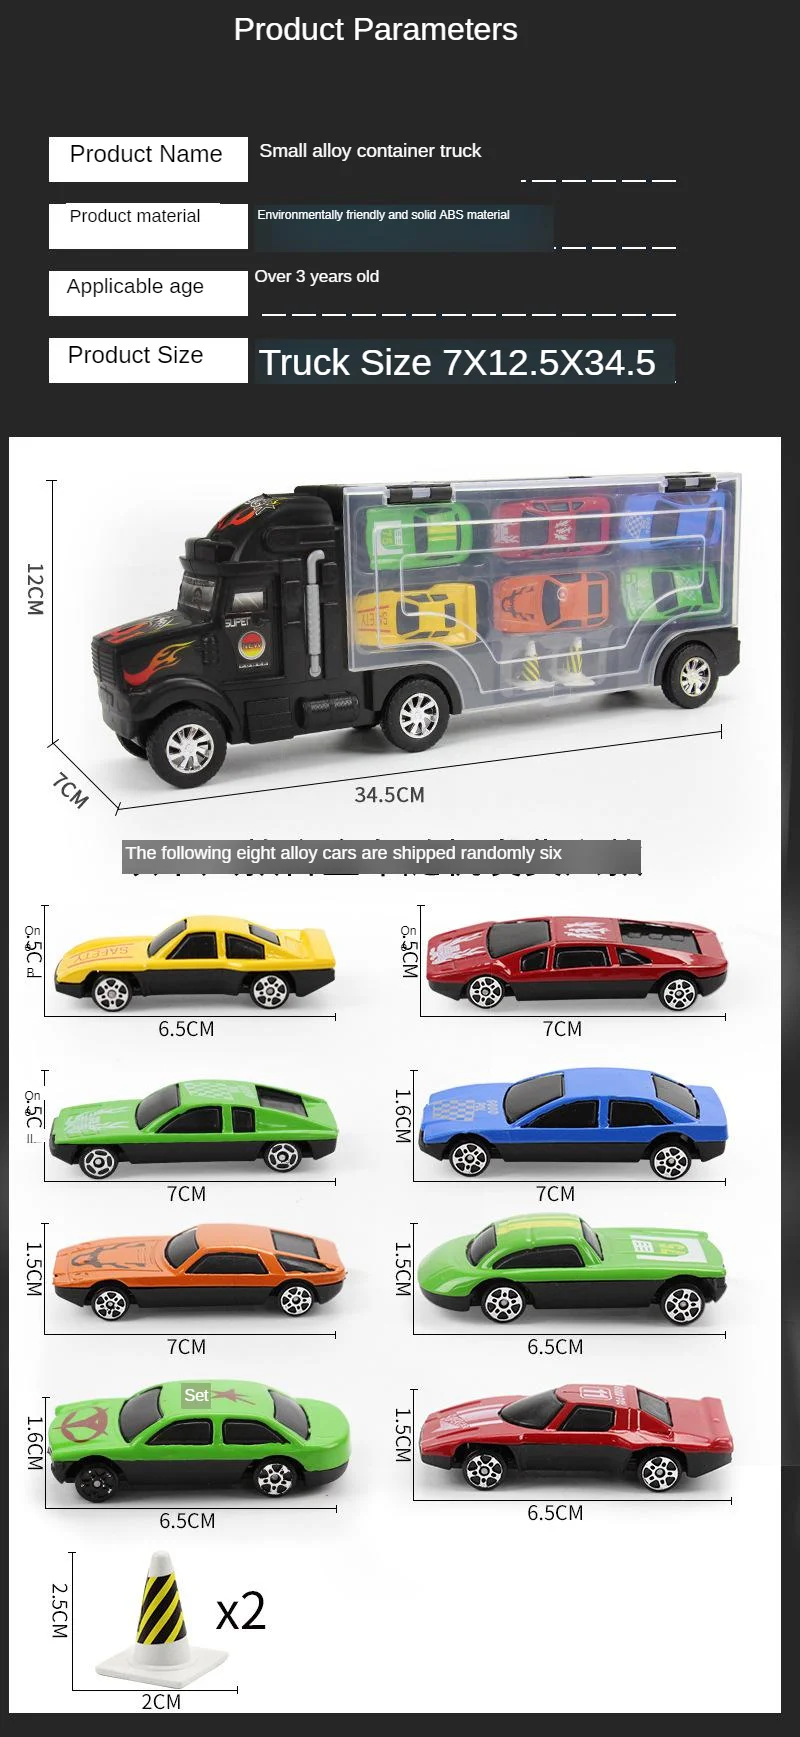 Металлический сплав автомобили грузовик Hauler с маленькими машинками литья под давлением Модель Детские Развивающие игрушки Рождественский подарок на день рождения для мальчиков